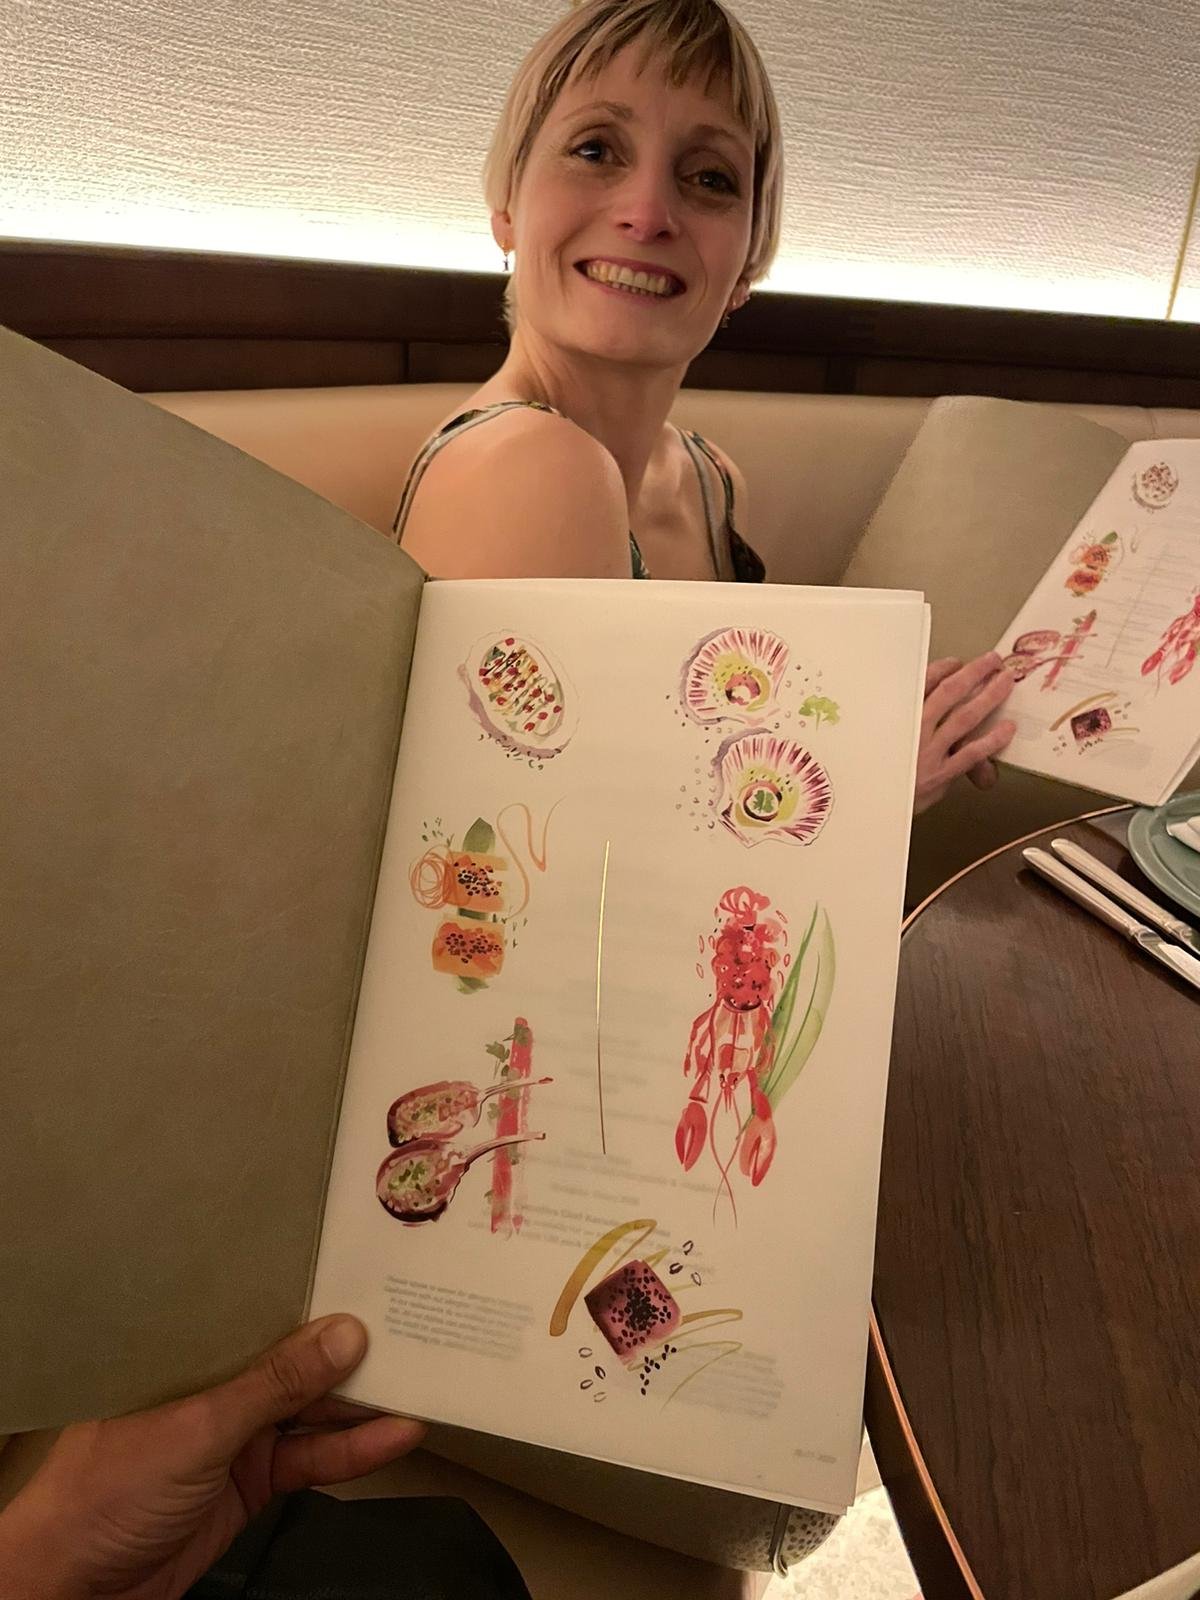 Tamarind restaurant - menu illustration by Willa Gebbie